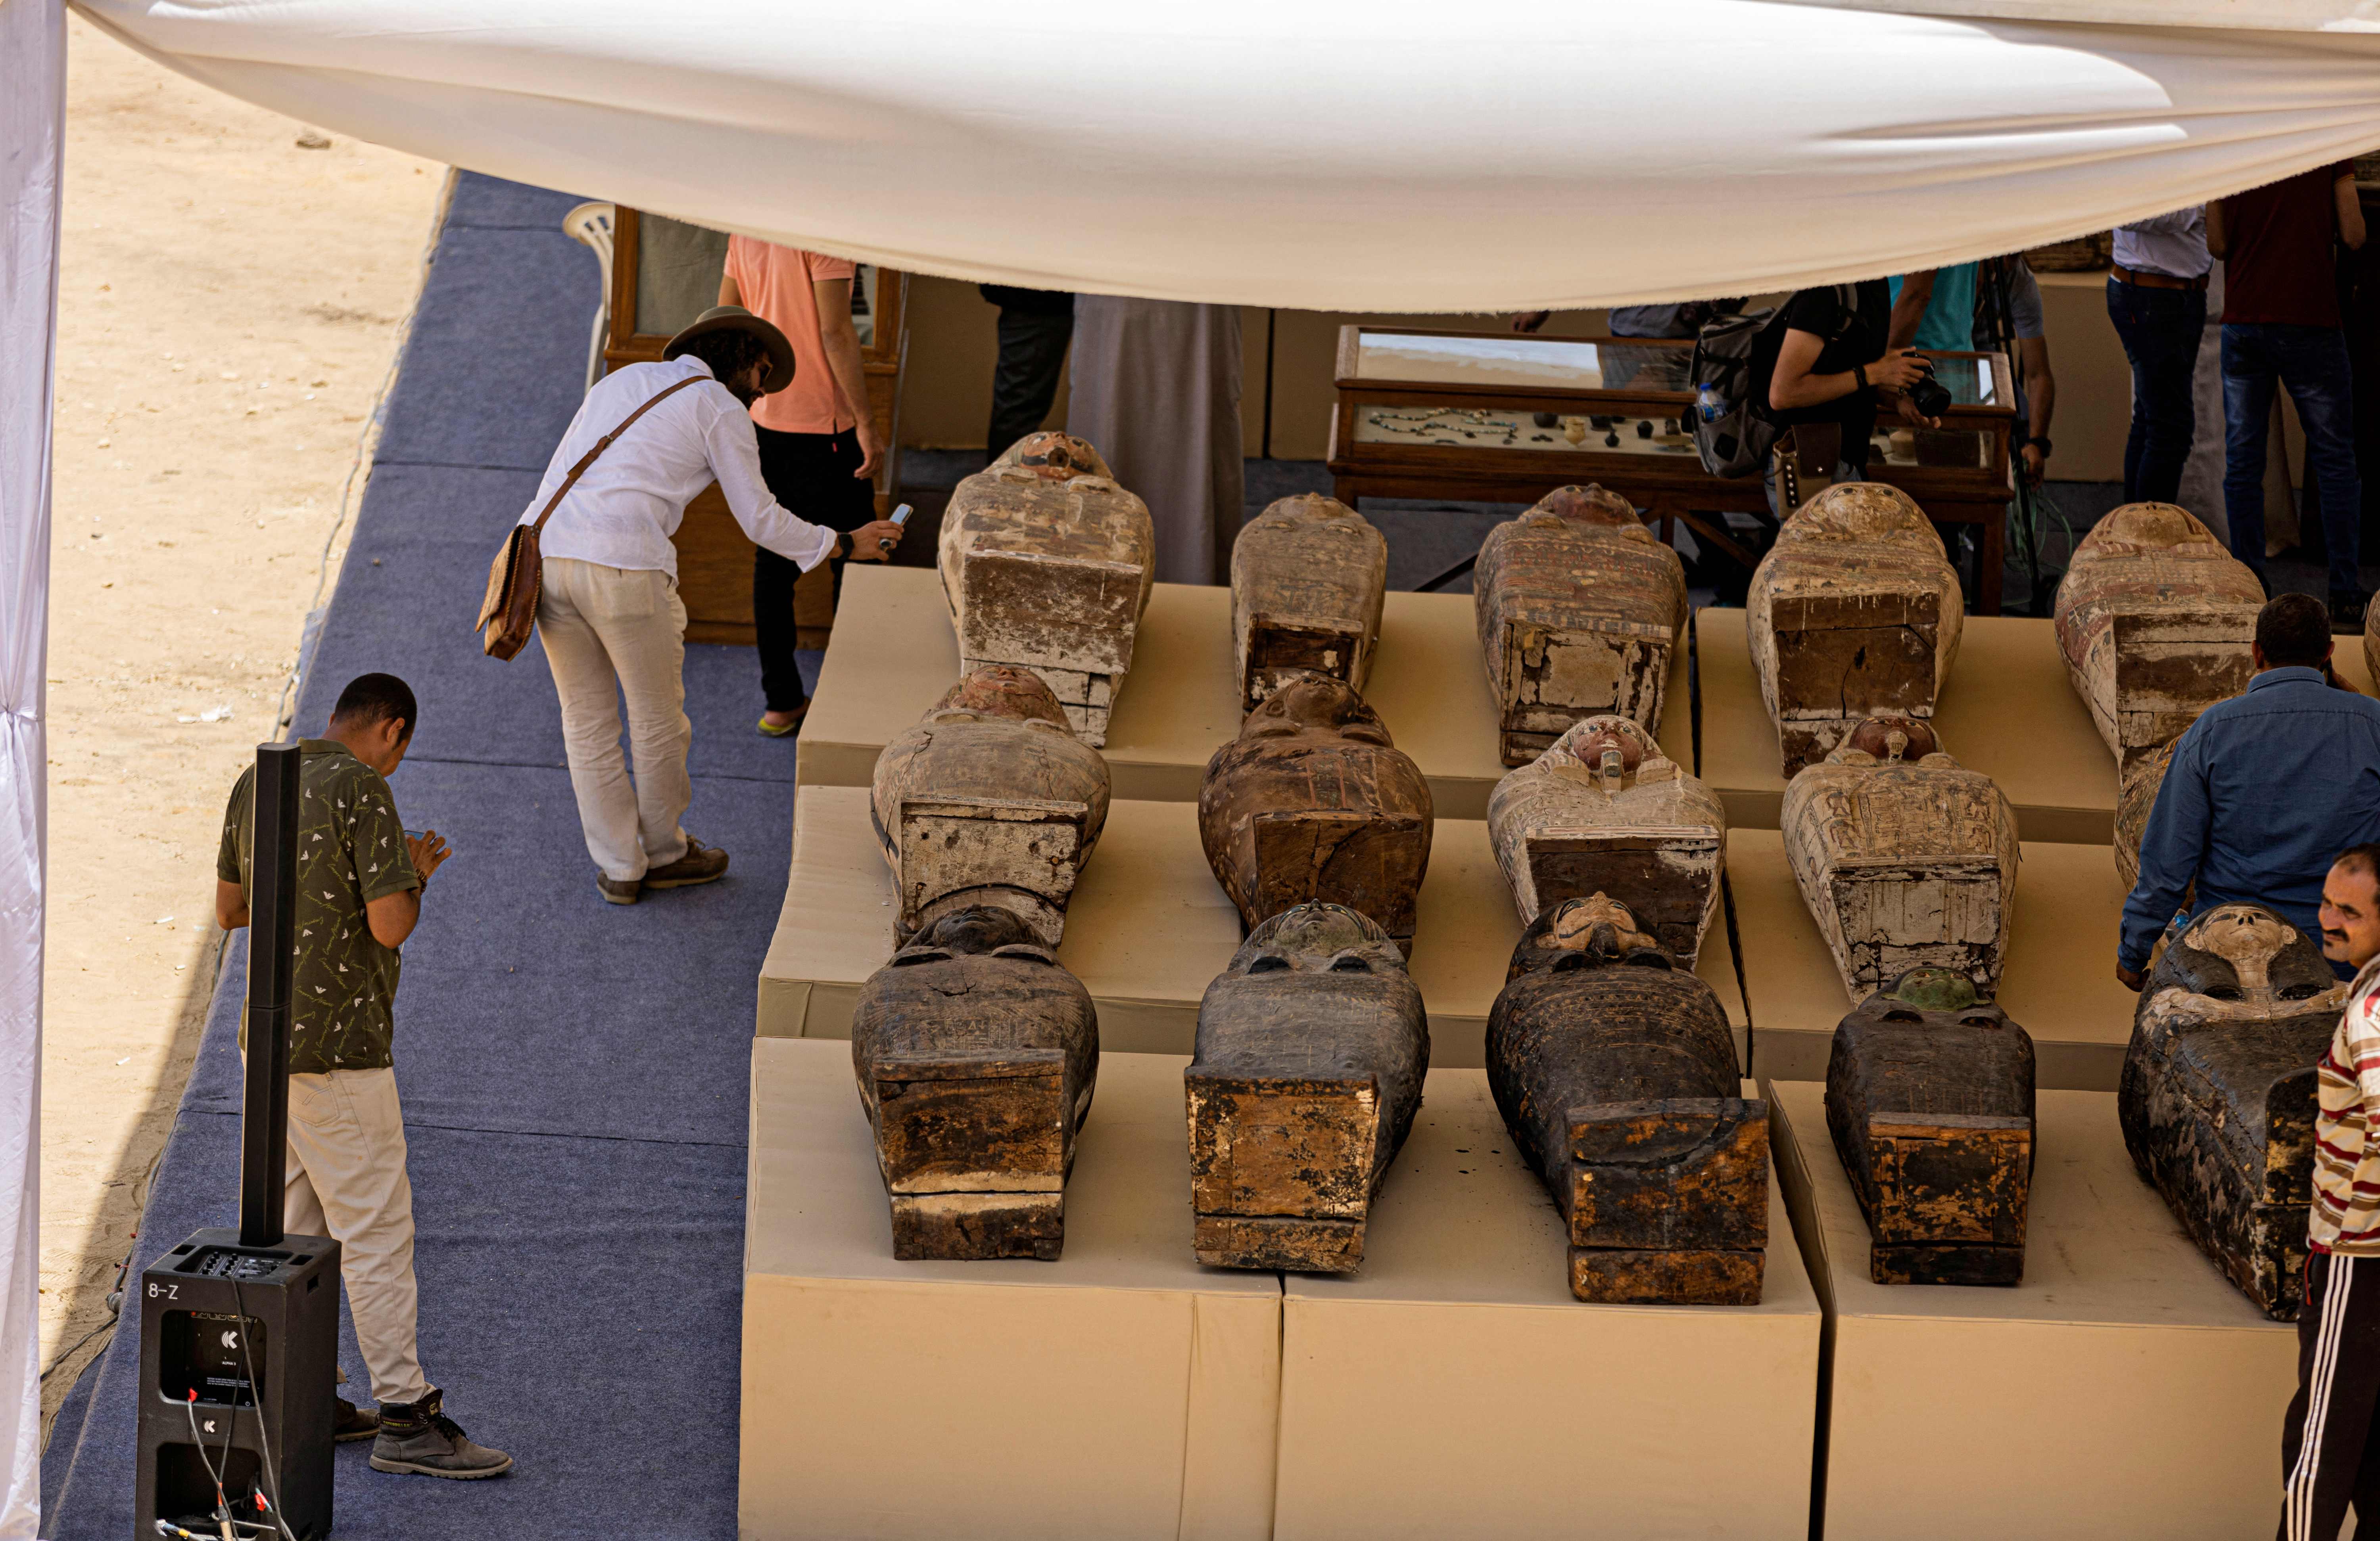 Gigantesco descubrimiento arqueológico en Egipto